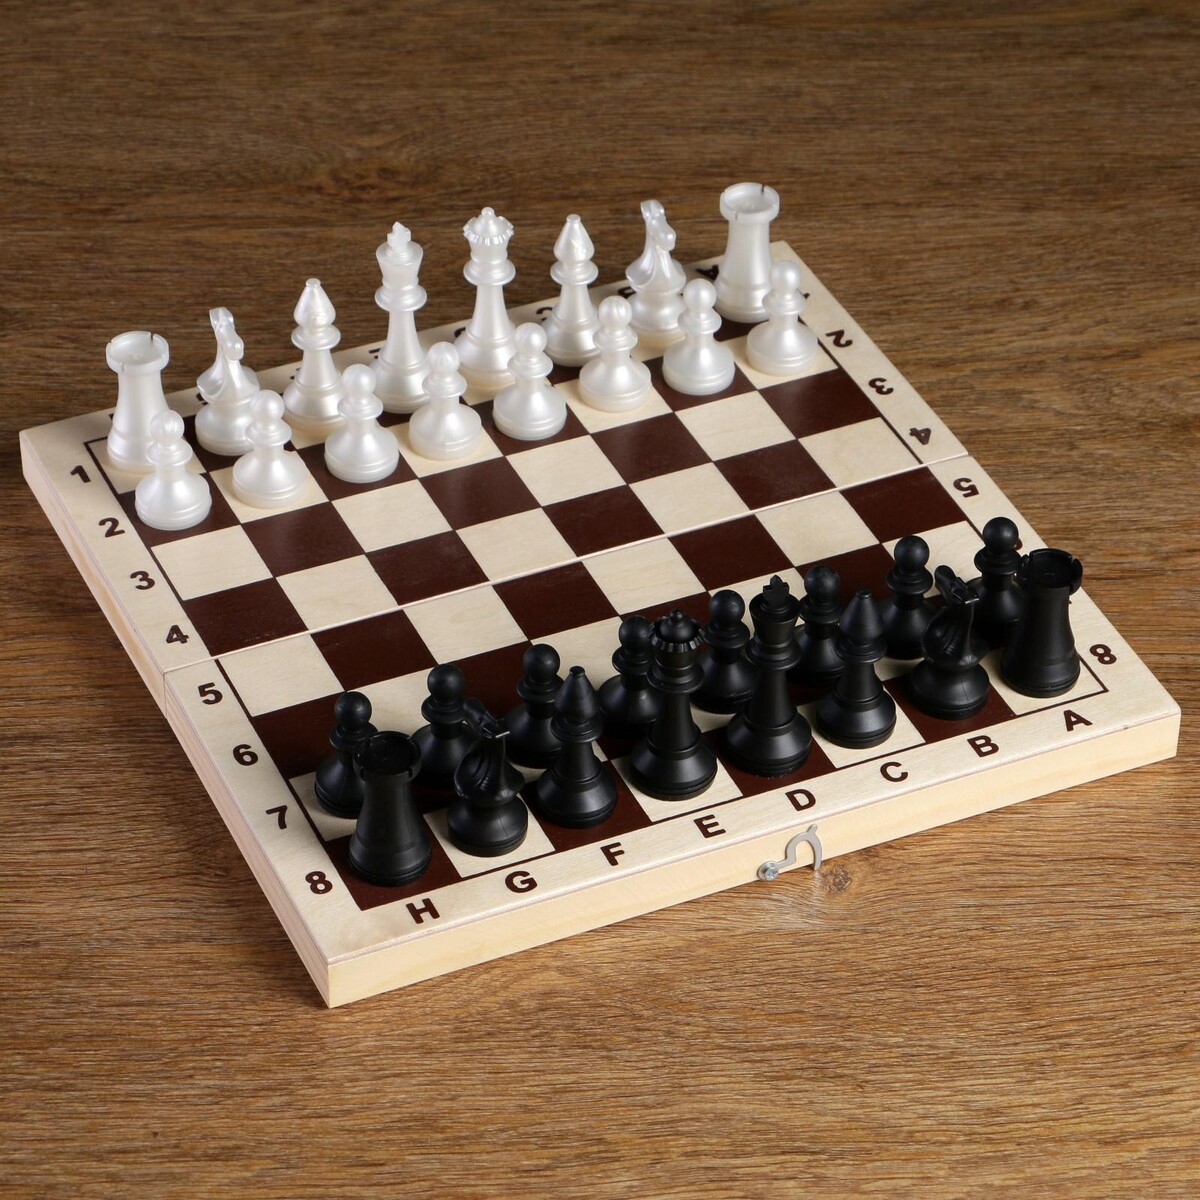 Шахматные фигуры обиходные, пластик, король h-7.2 см, пешка 4 см шахматные фигуры обиходные король h 7 см d 2 4 см пешка h 4 4 см d 2 4 см